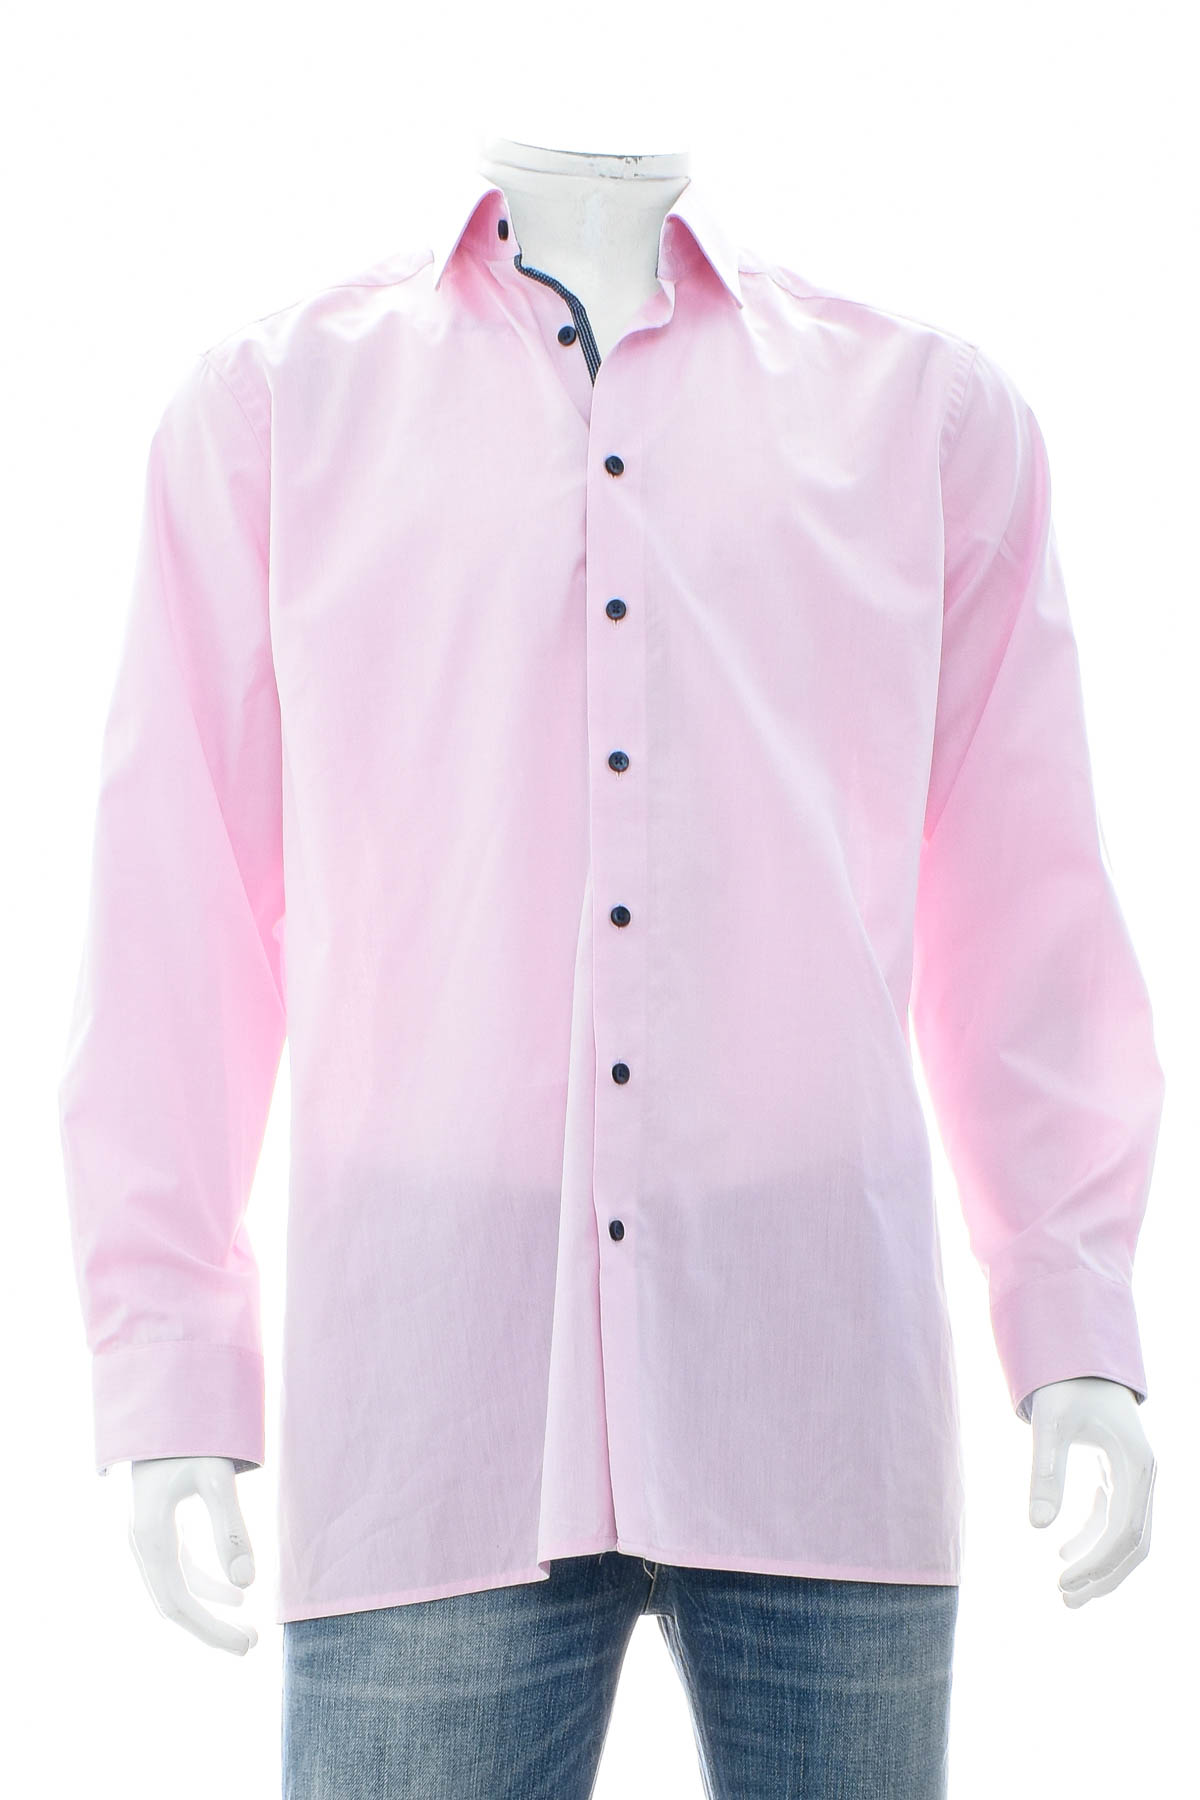 Ανδρικό πουκάμισο - Finshley & Harding - 0